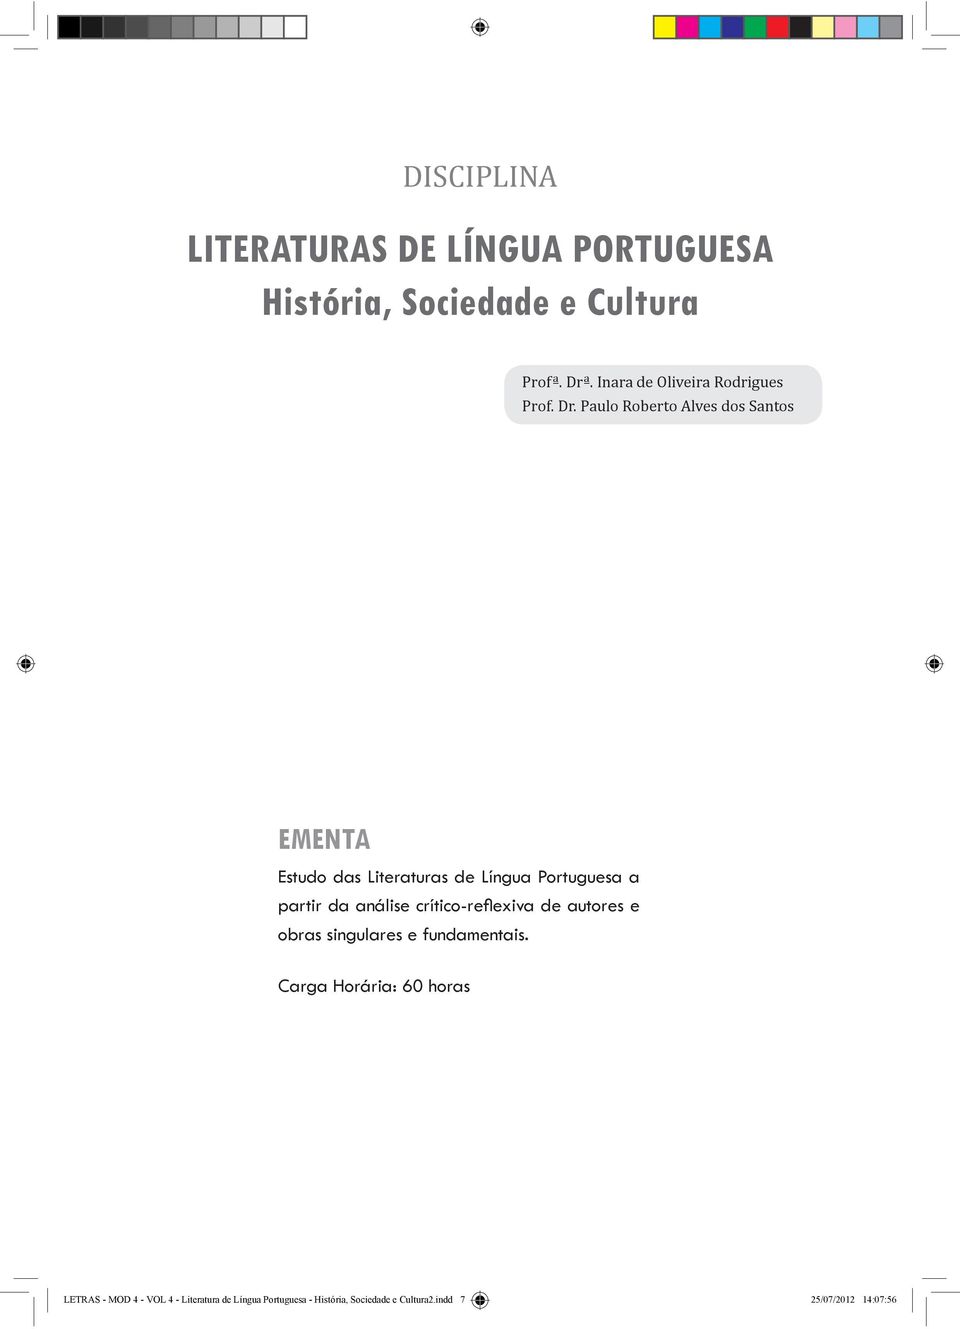 Paulo Roberto Alves dos Santos EMENTA Estudo das Literaturas de Língua Portuguesa a partir da análise